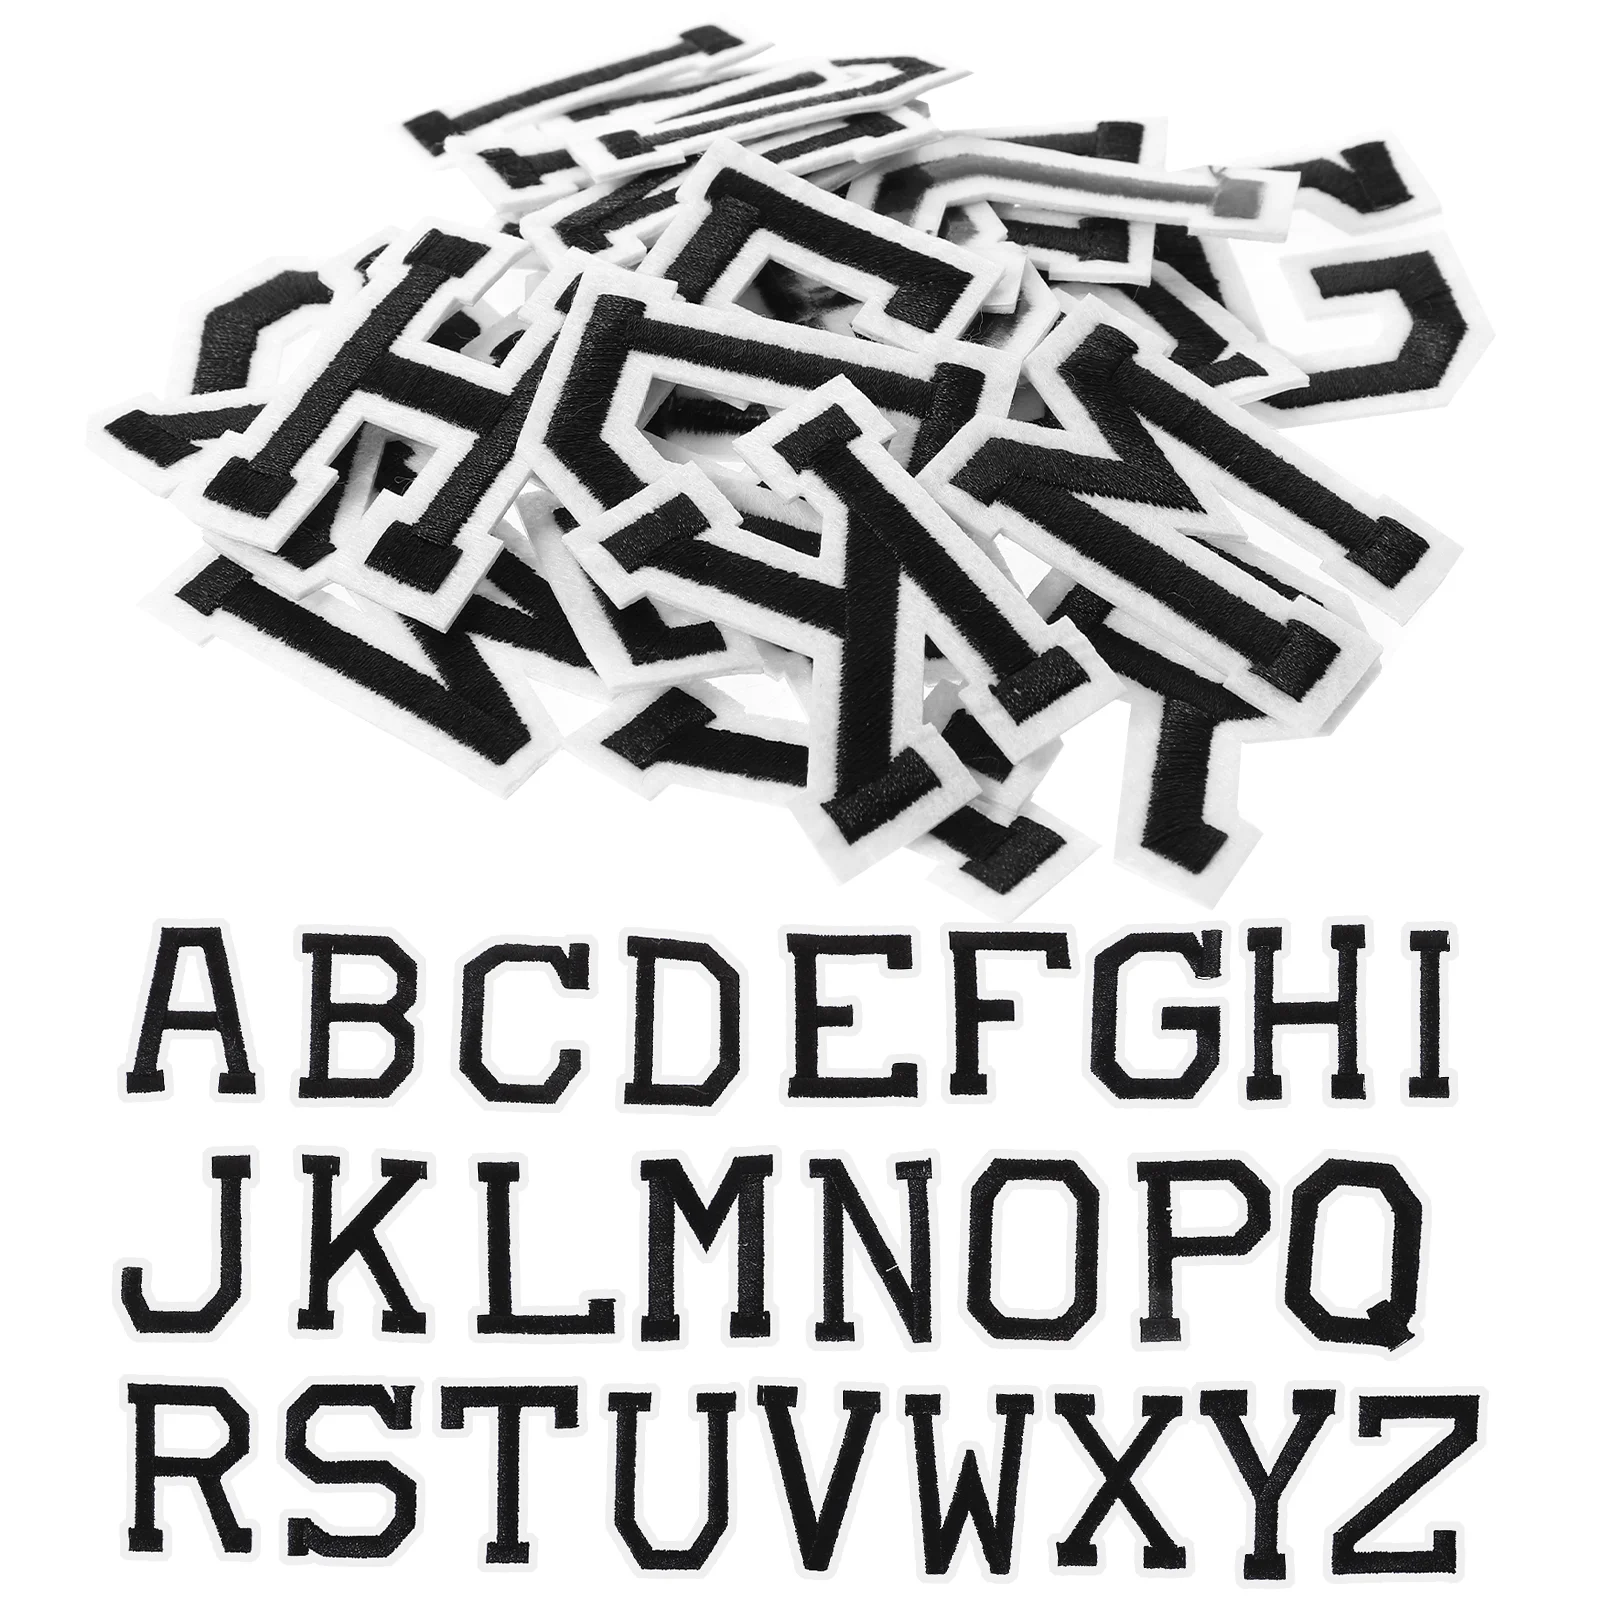 

Patches Patch Letter Alphabet Iron Sew Letters Z A Clothes Repair Decorative English Decors Clothing Garment Applique Stick